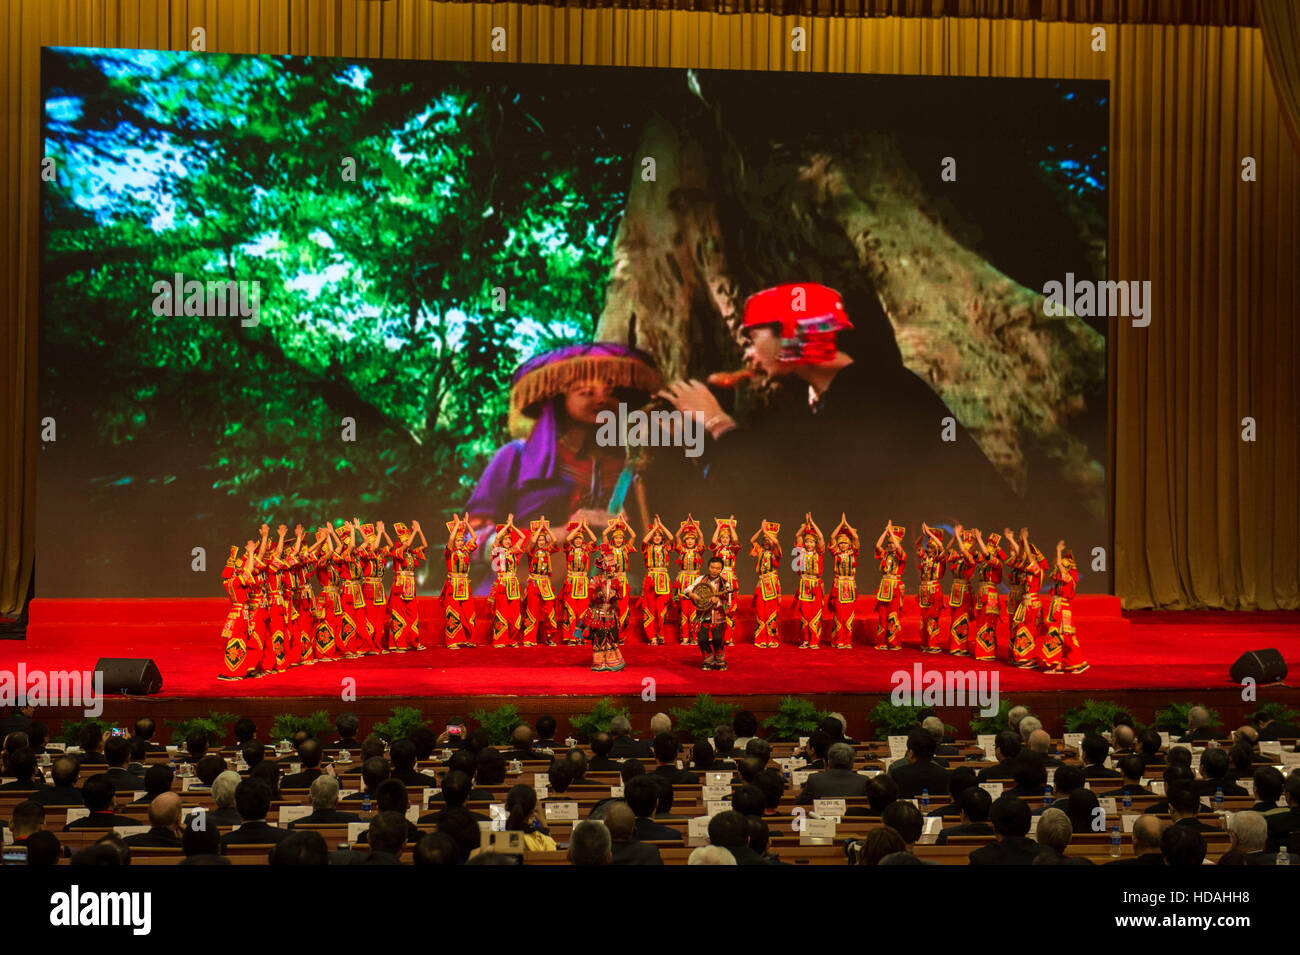 (161210) -- KUNMING , 10 décembre 2016 (Xinhua) -- La 11e Conférence de l'Institut Confucius ouvre à Kunming, capitale du sud-ouest de la province chinoise du Yunnan, le 10 décembre 2016. L'Institut Confucius, un organisme sans but lucratif en vertu de l'organisation de l'éducation publique du ministère chinois de l'éducation, offre du financement, des enseignants et du matériel d'enseignement de l'outre-mer et la langue chinoise cours culturels. (Xinhua/Hu Chao) (WX) Banque D'Images